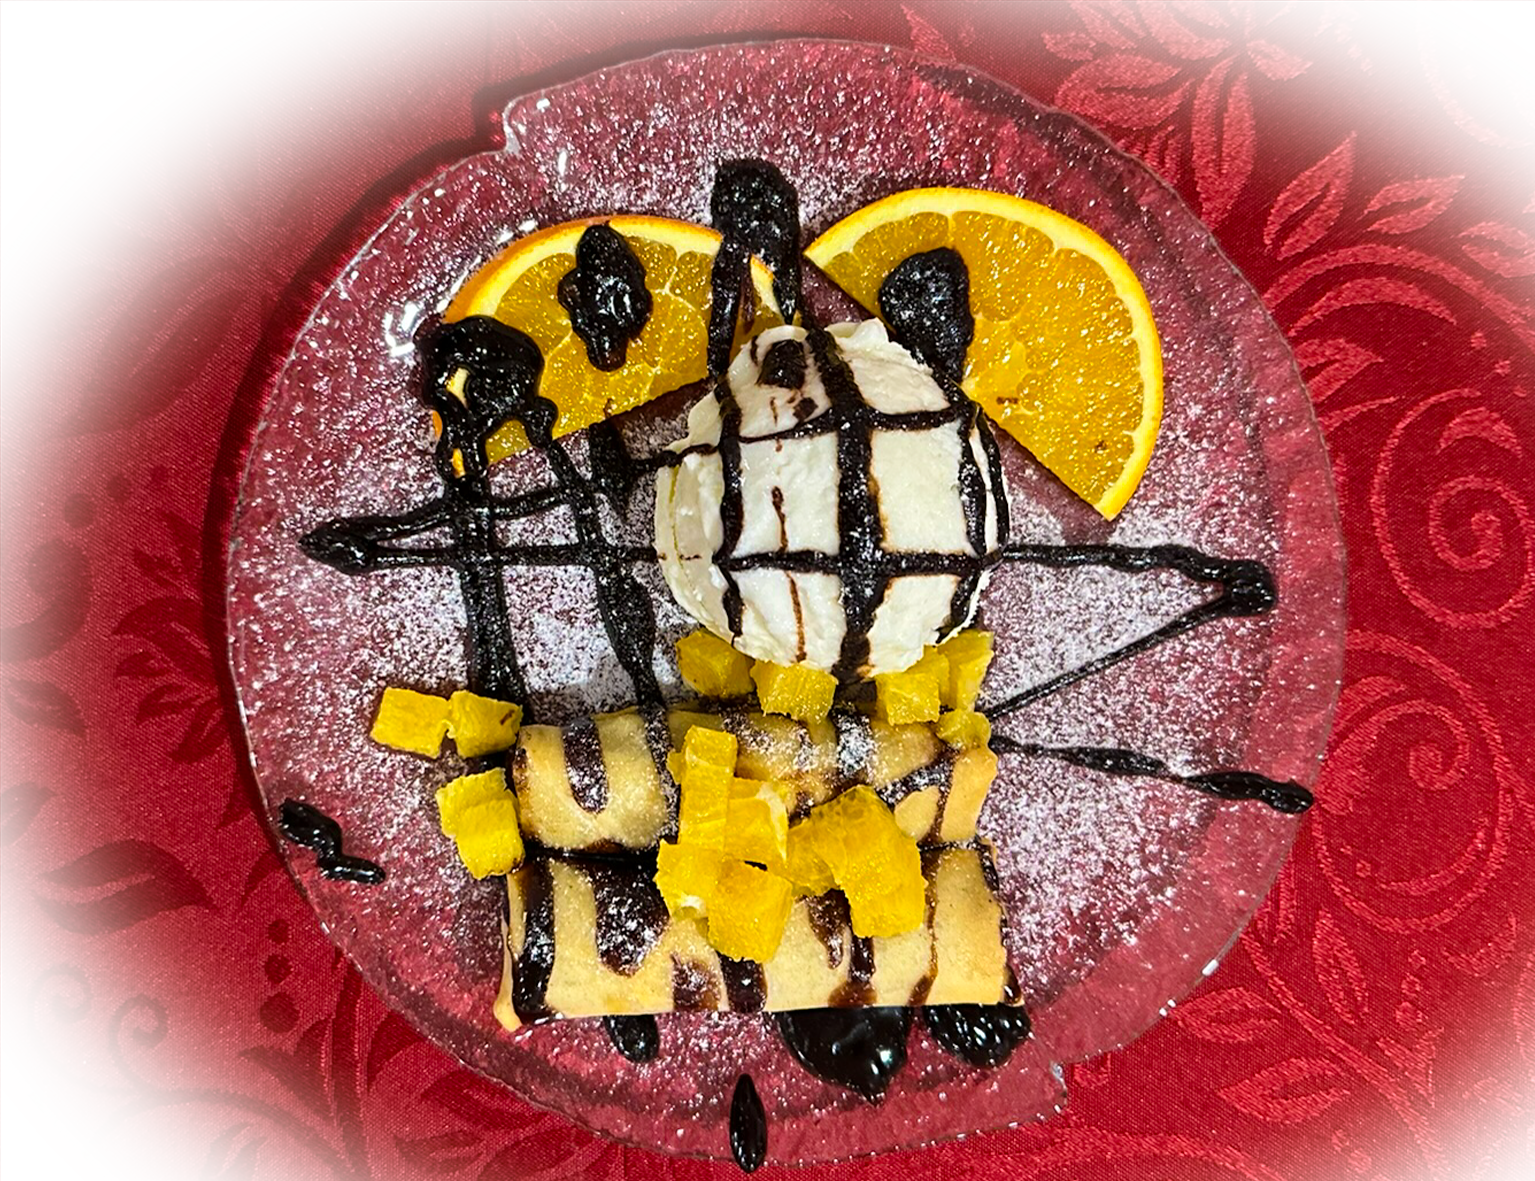 Ein einzigartiges Dessert, das traditionelle Frühlingsrollen auf süsse Art neu interpretiert. Reife